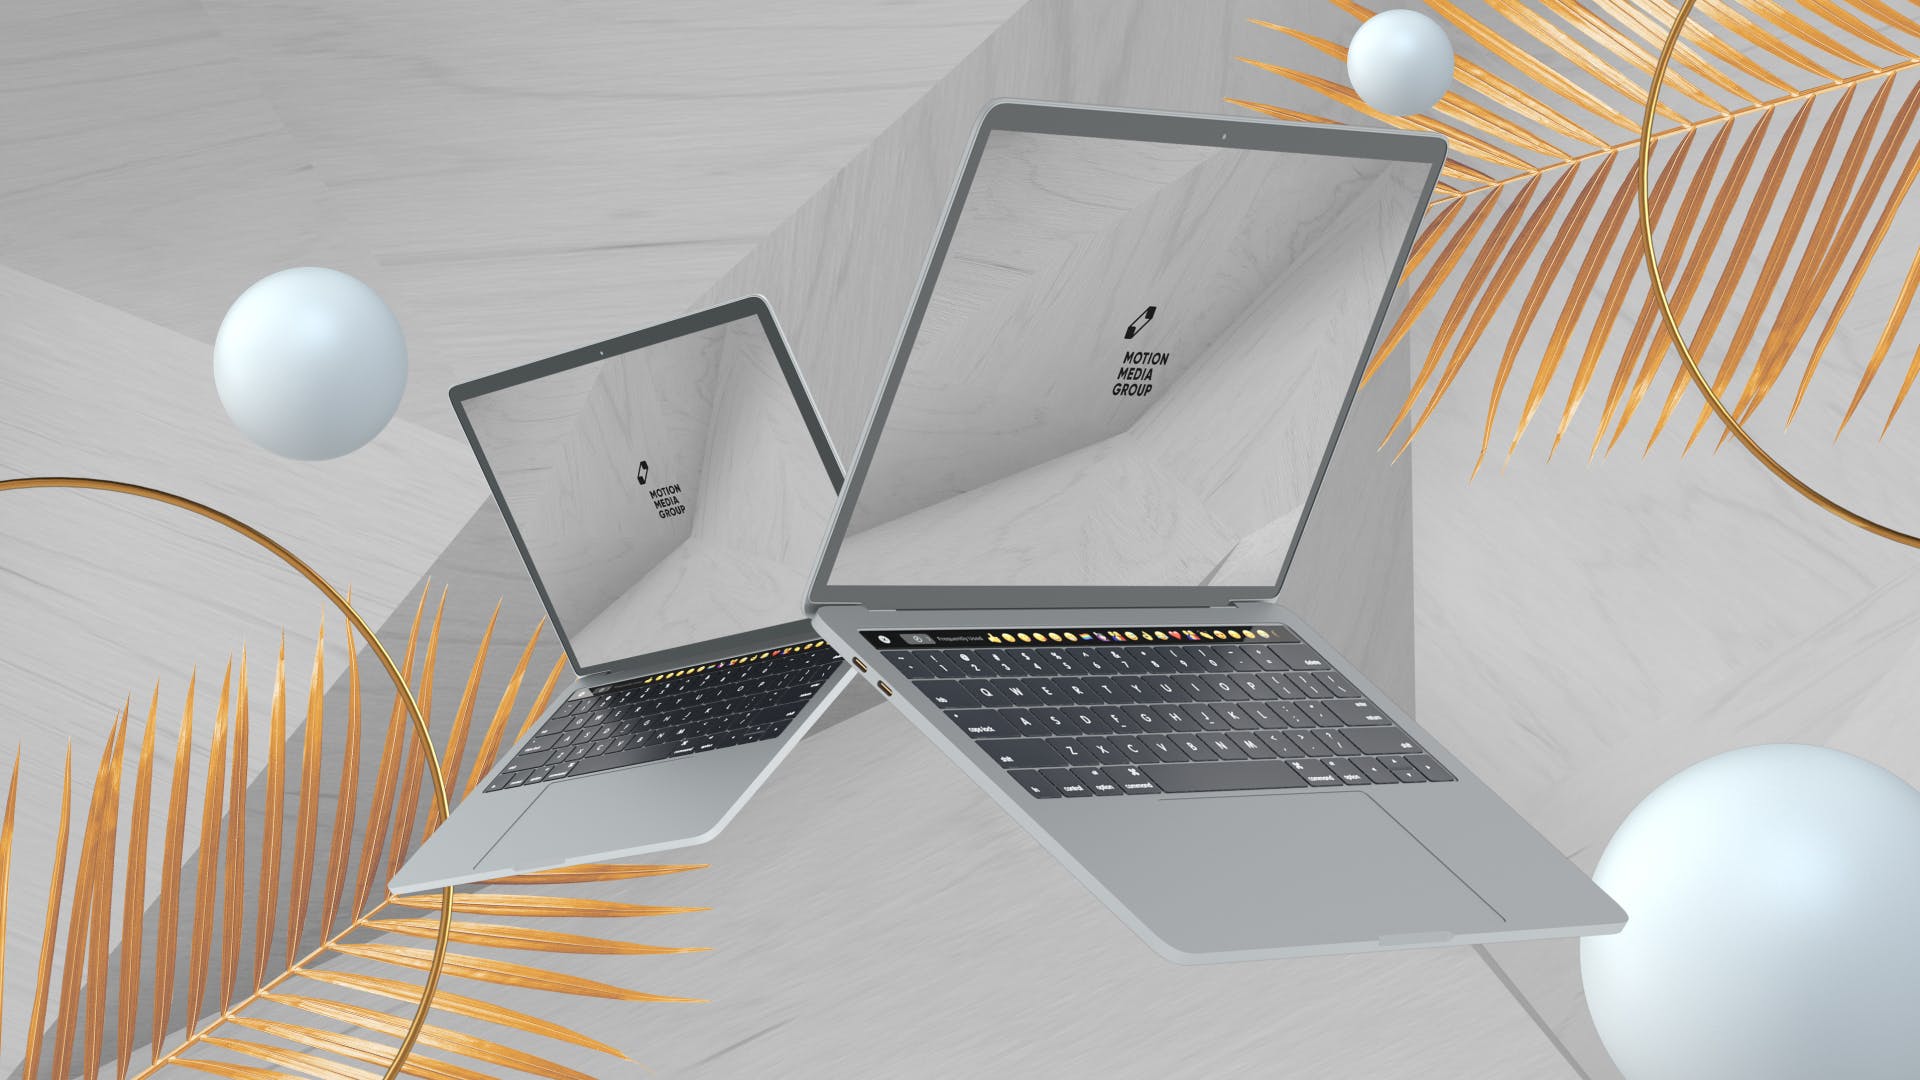 优雅时尚风格3D立体风格笔记本电脑屏幕预览第一素材精选样机 10 Light Laptop Mockups插图(7)